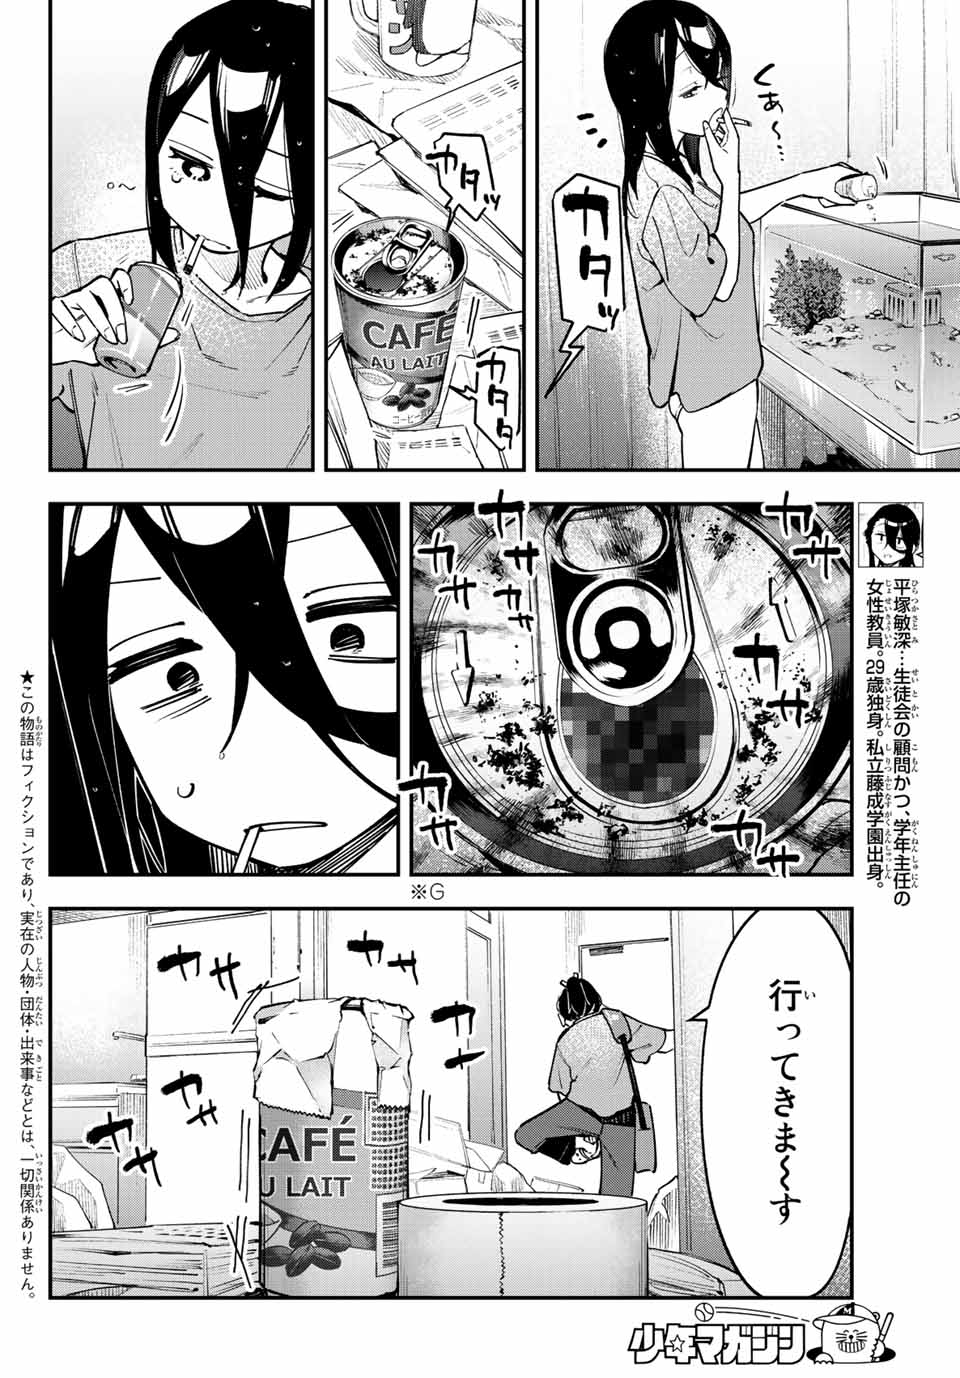 Seitokai mi mo Ana wa Aru! - Chapter 52 - Page 2